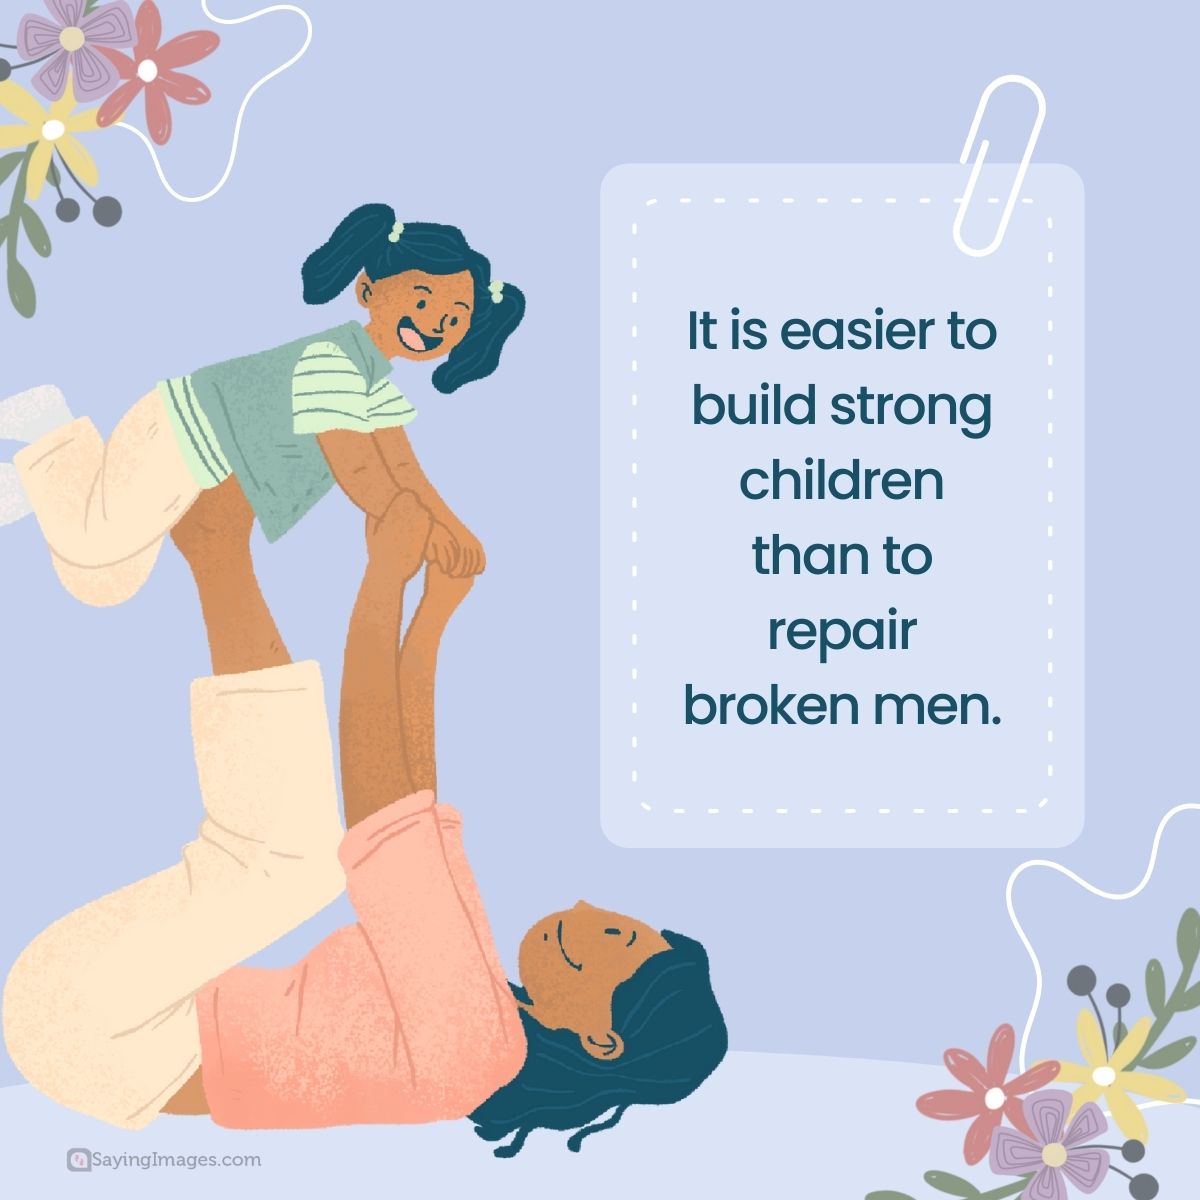 It is easier to build strong children than to repair broken men